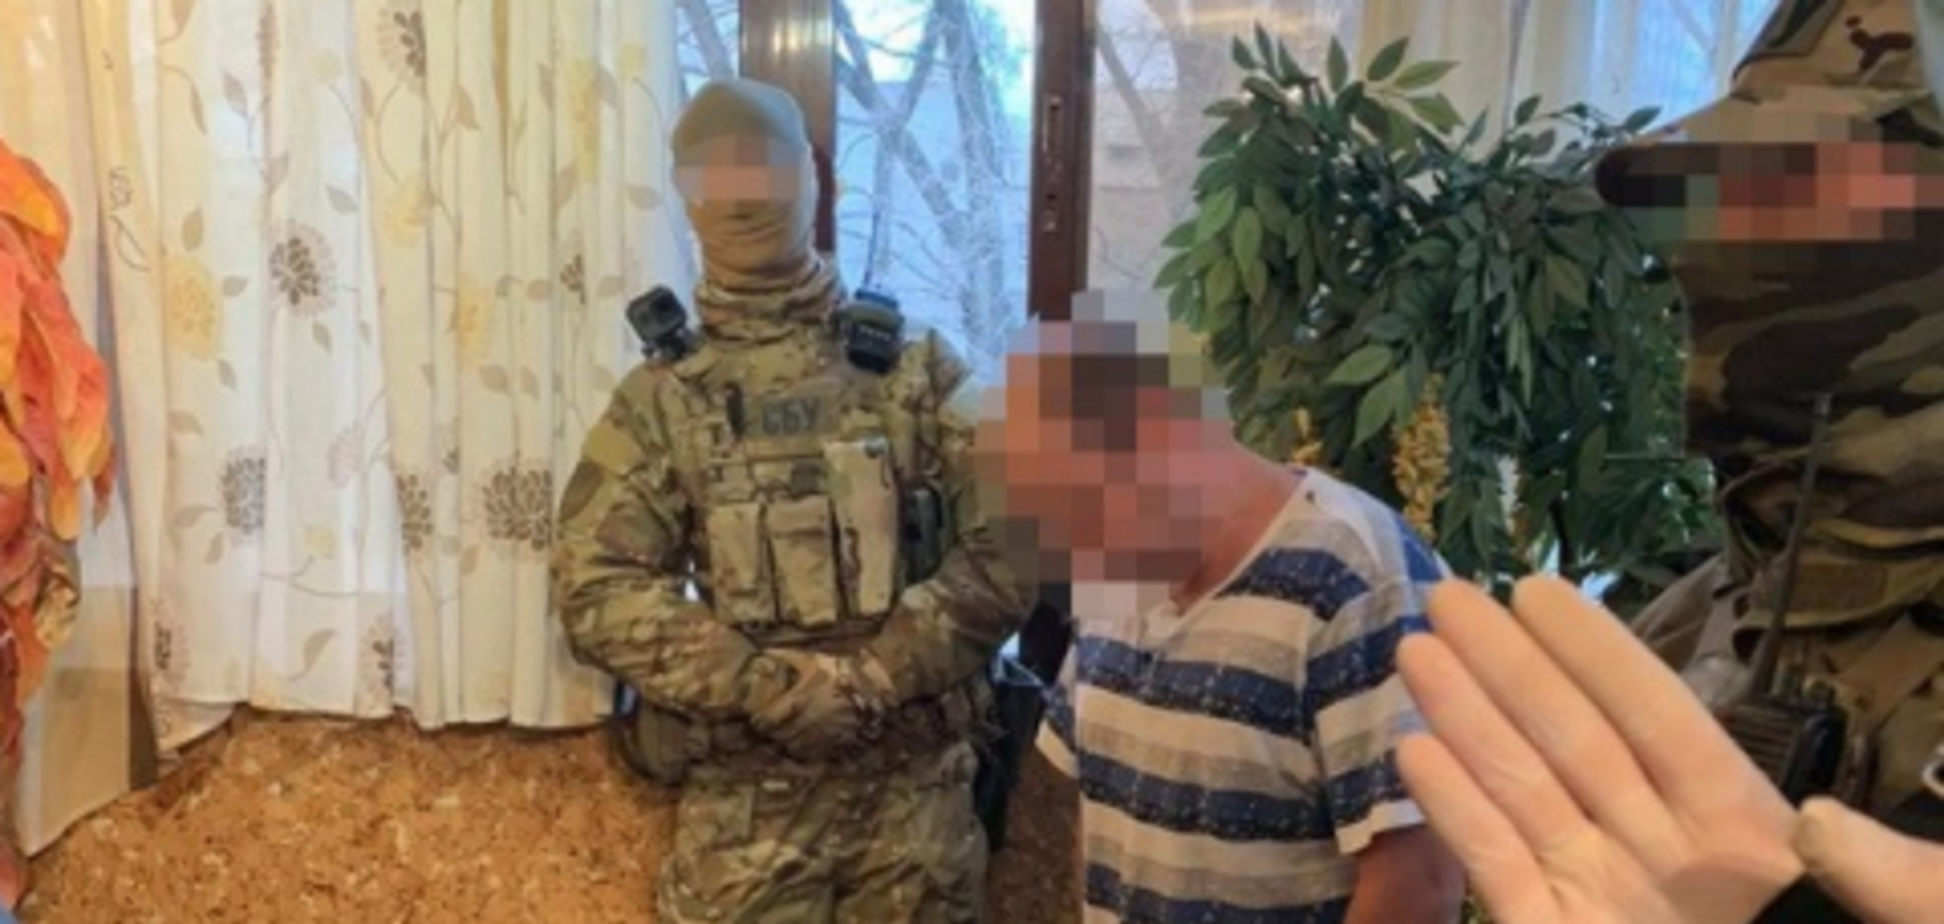 Сбывали товар по всему региону: СБУ задержала под Днепром группу наркоторговцев